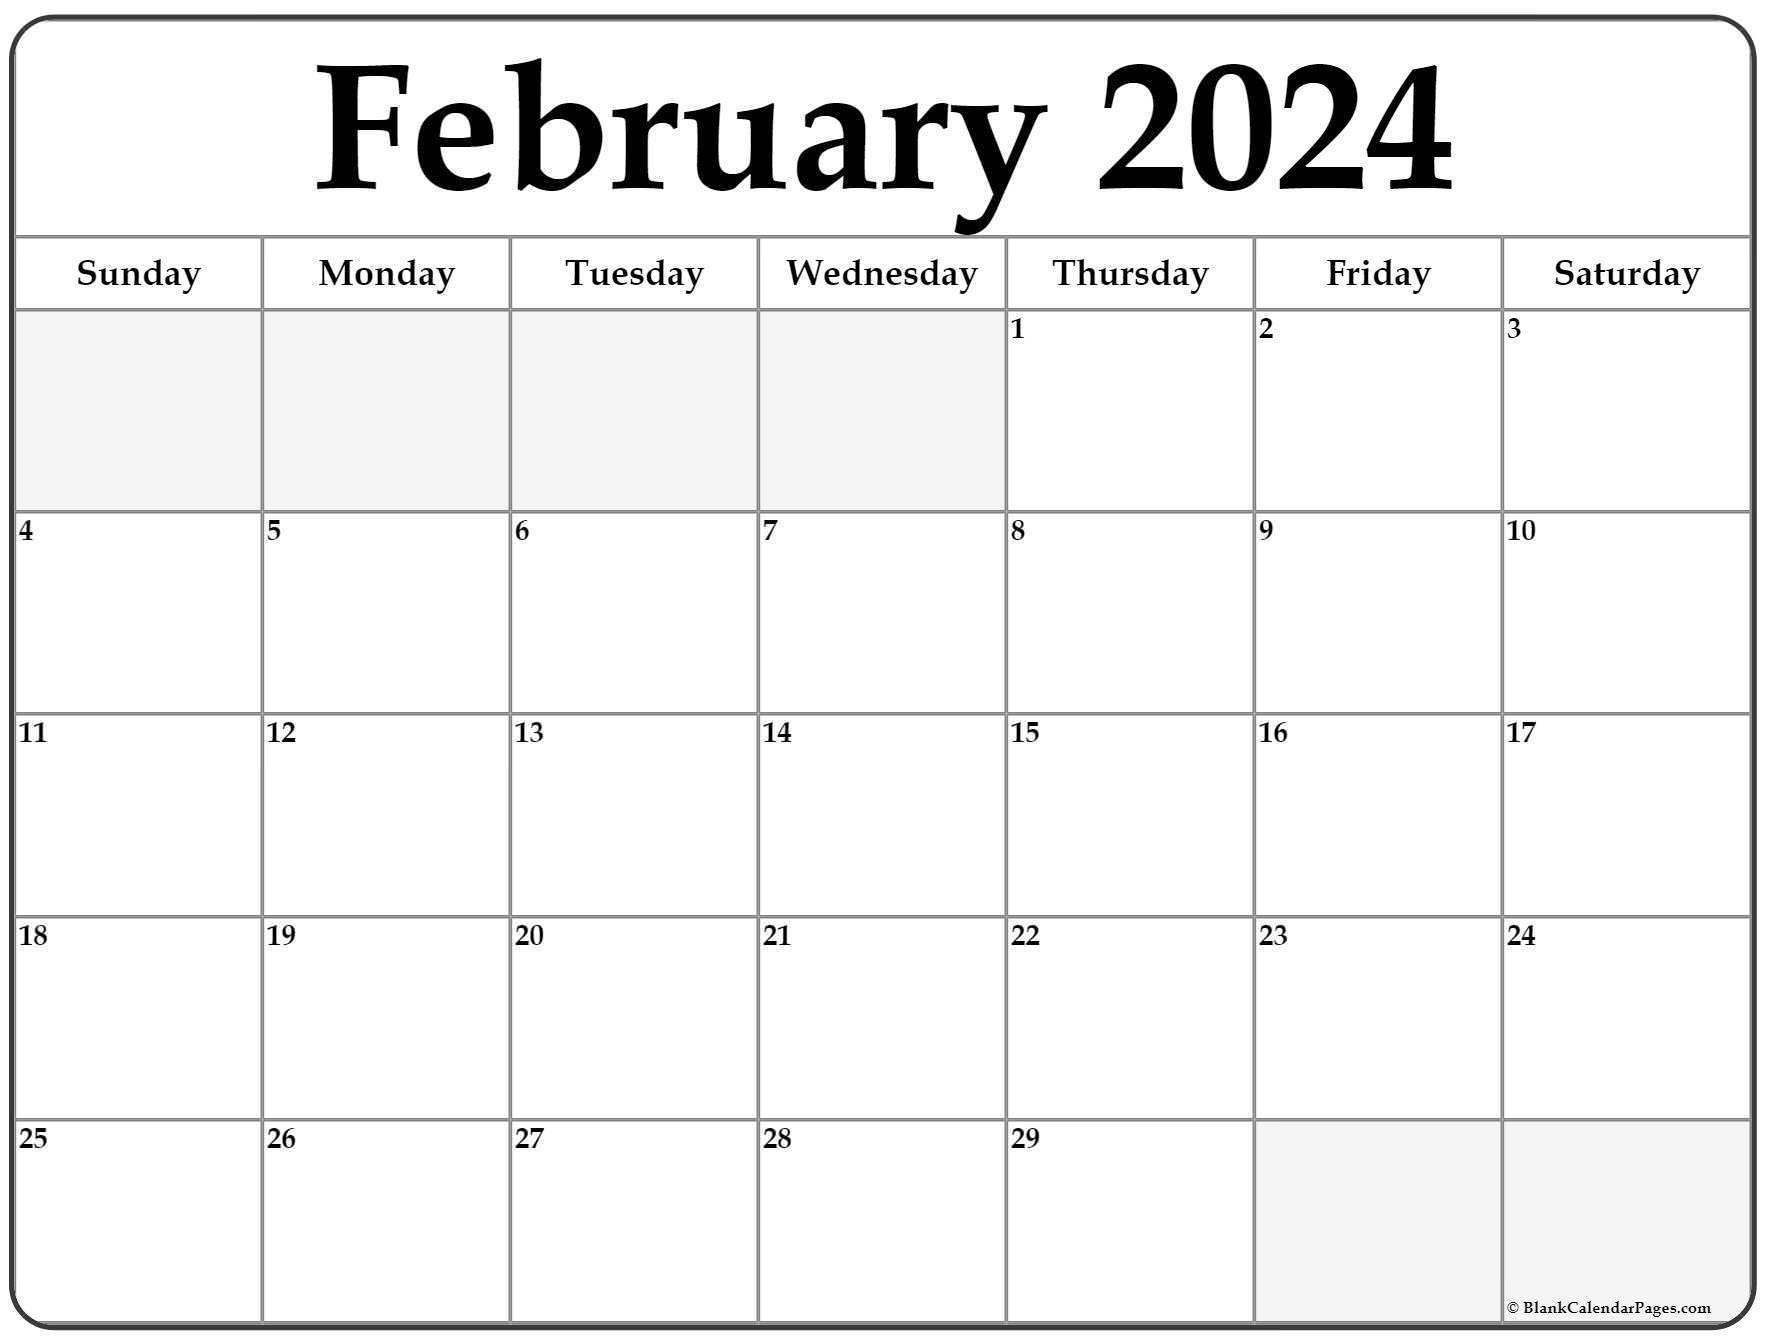 February 2022 calendar free printable calendar